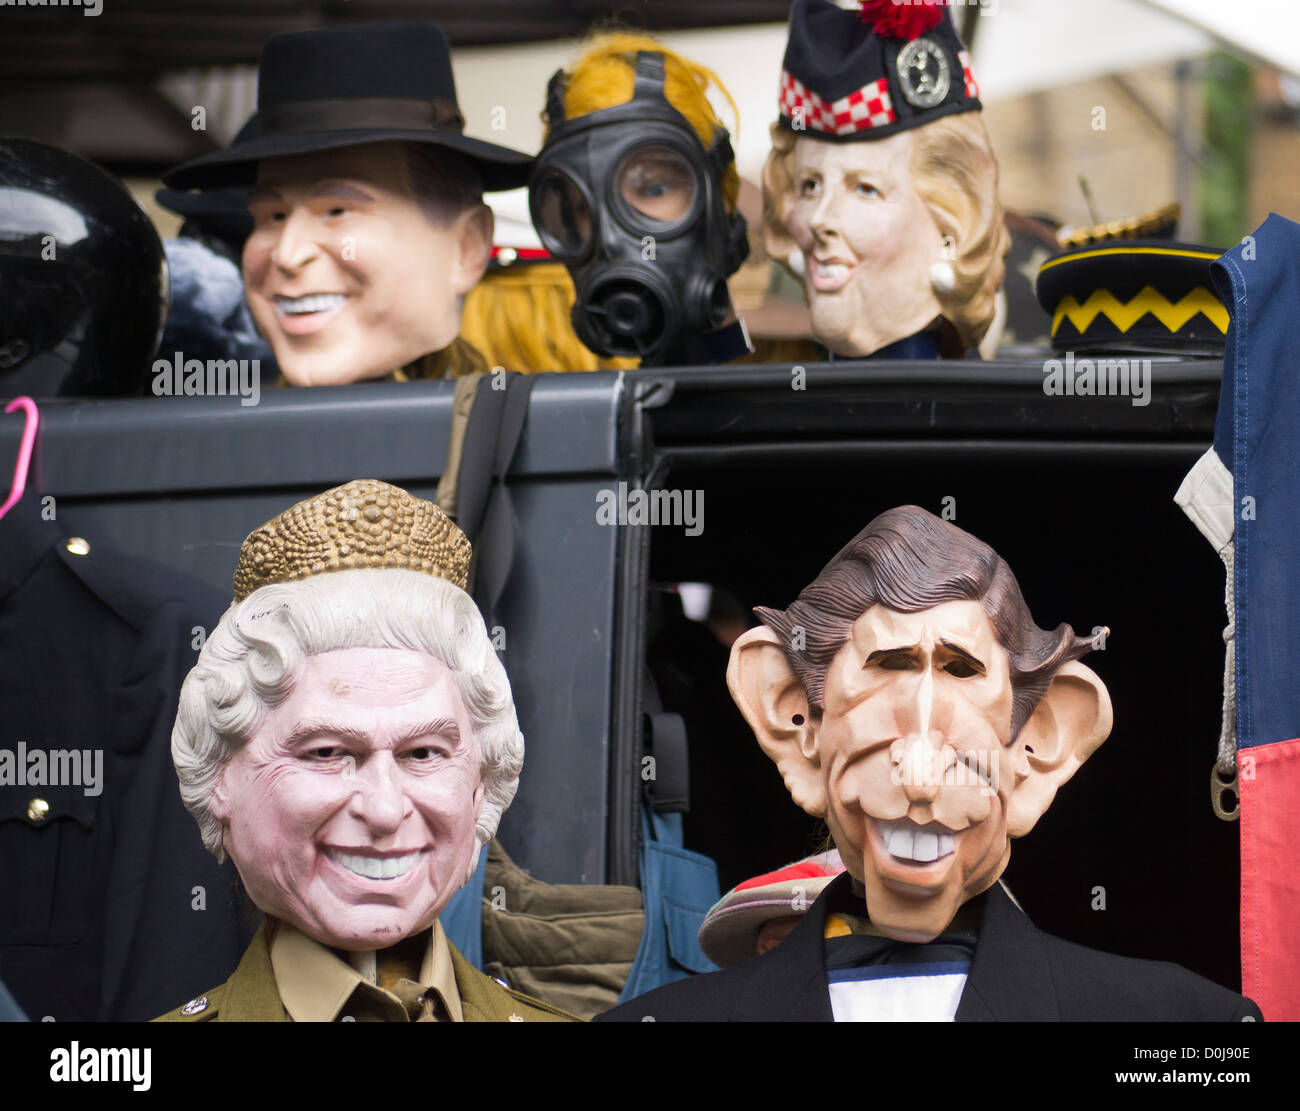 Facce famose in una fase di stallo vendita di maschere e cappelli a mercato di Portobello Road. Foto Stock